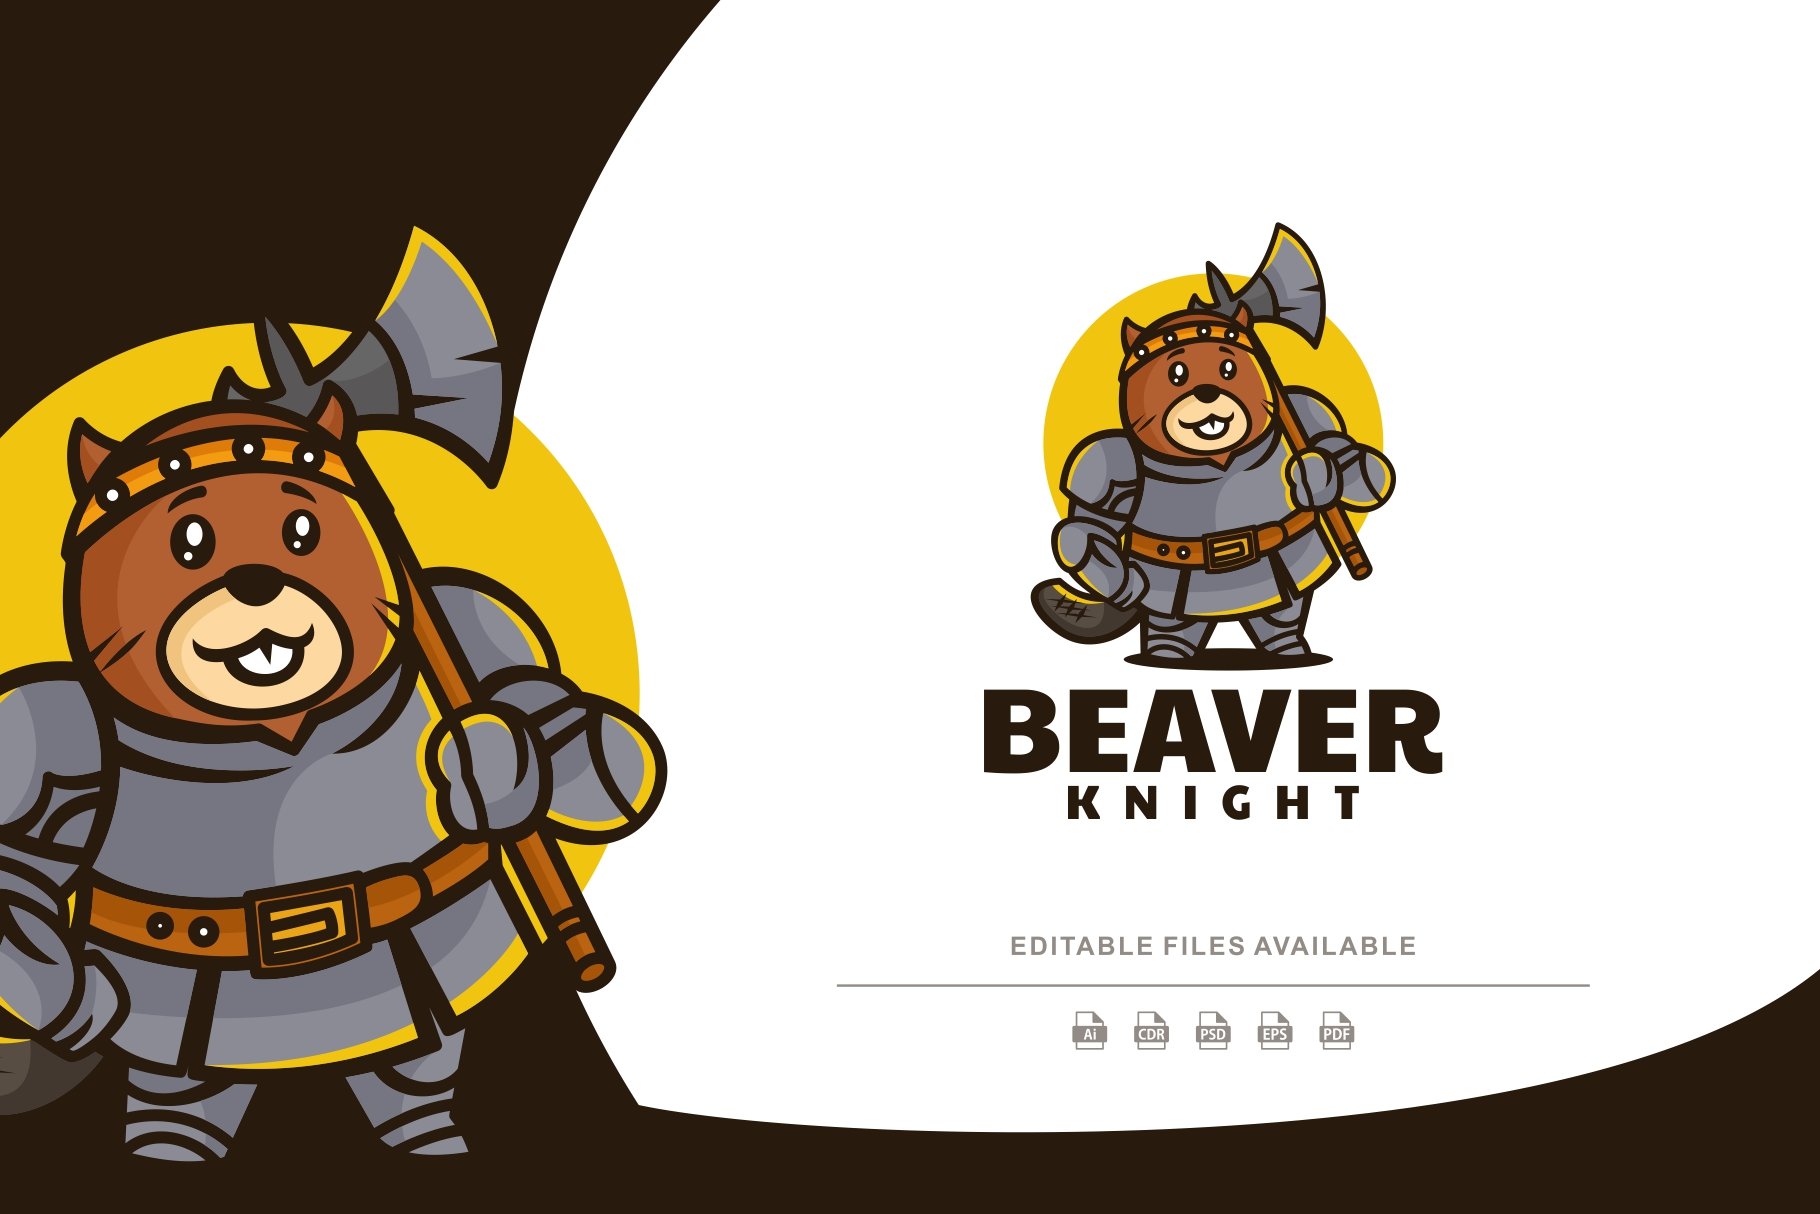 Knight Beaver Mascot Cartoon Logo cover image.